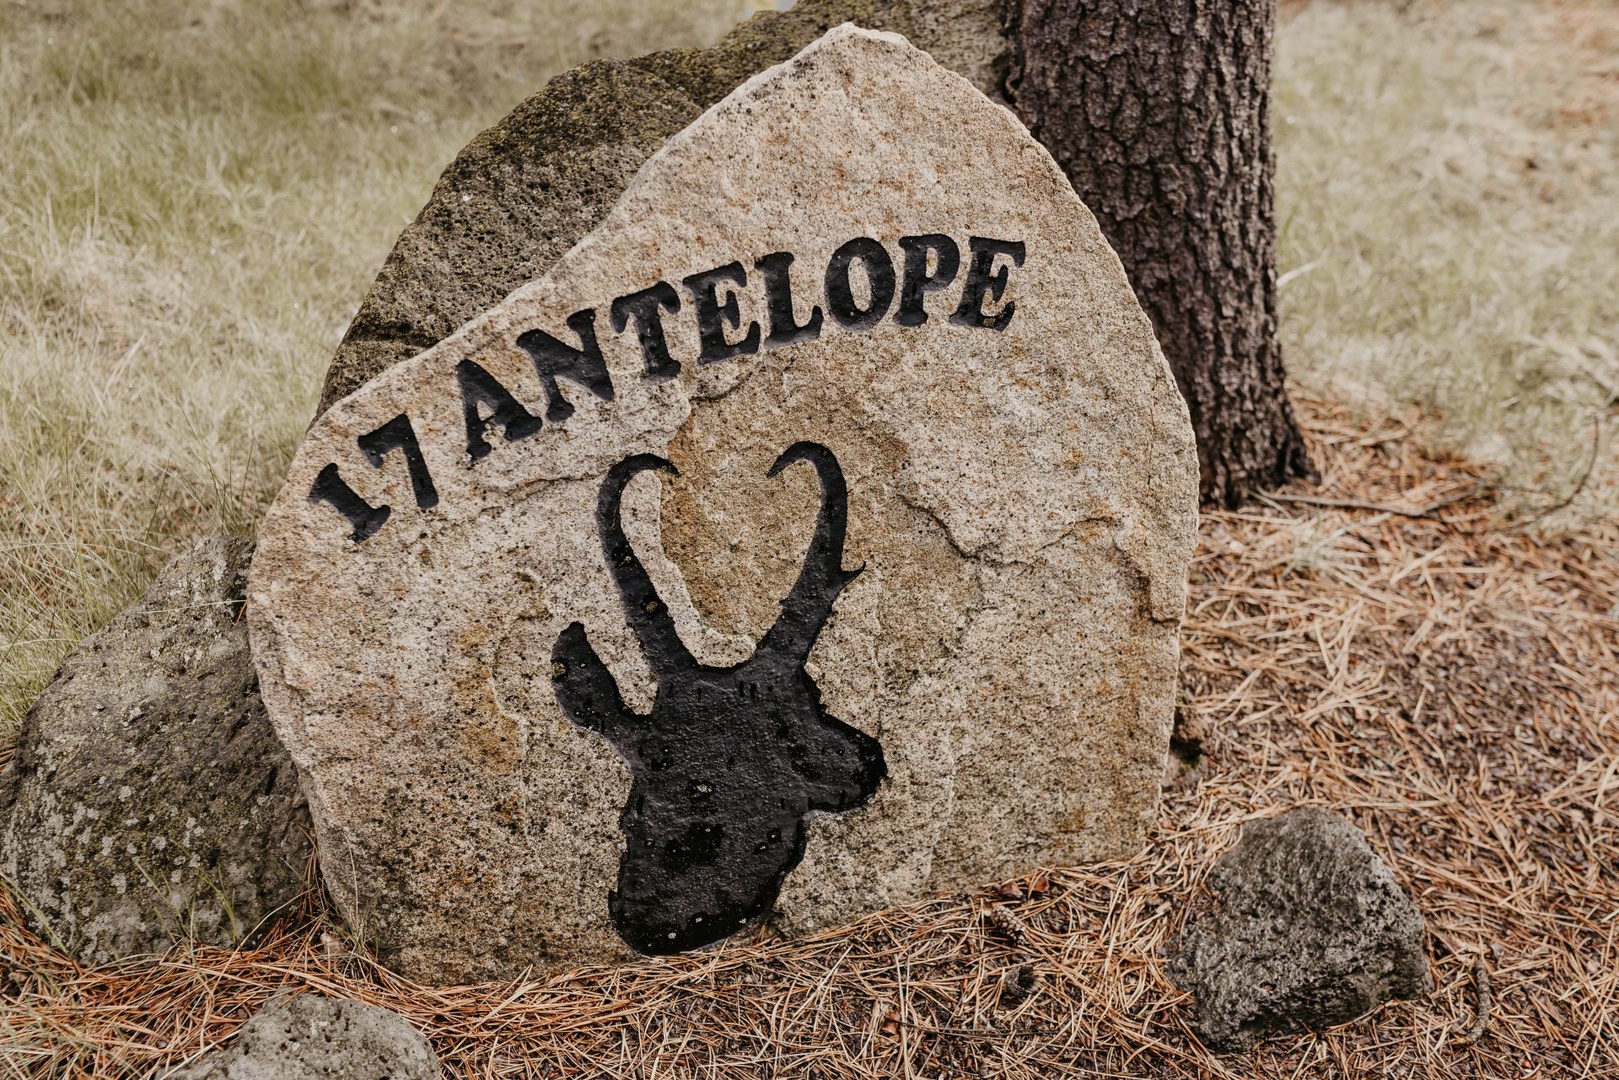 17 Antelope yard sign